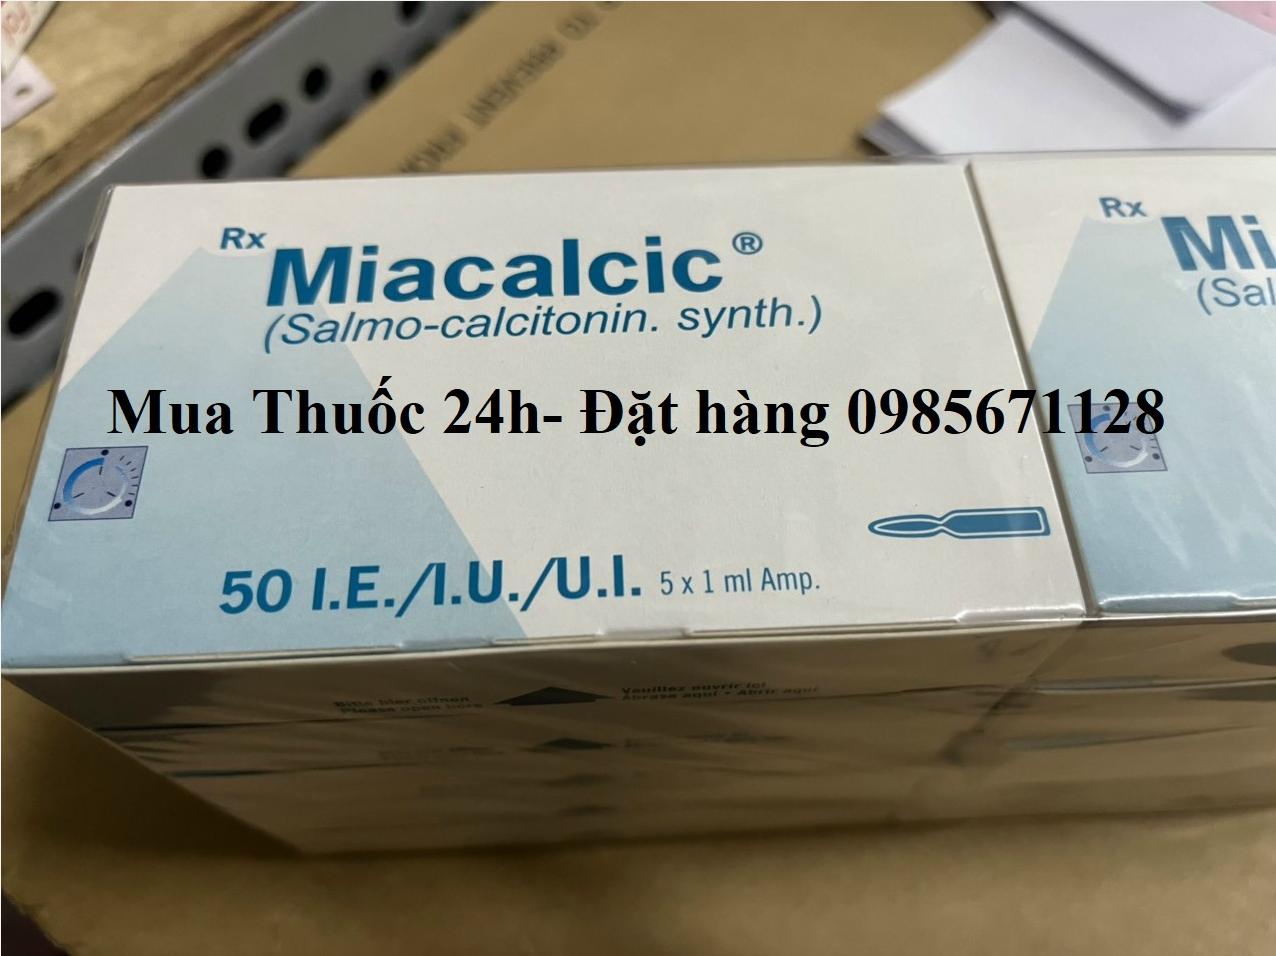 Thuốc Miacalcic 50 IU/ml giá bao nhiêu mua ở đâu 